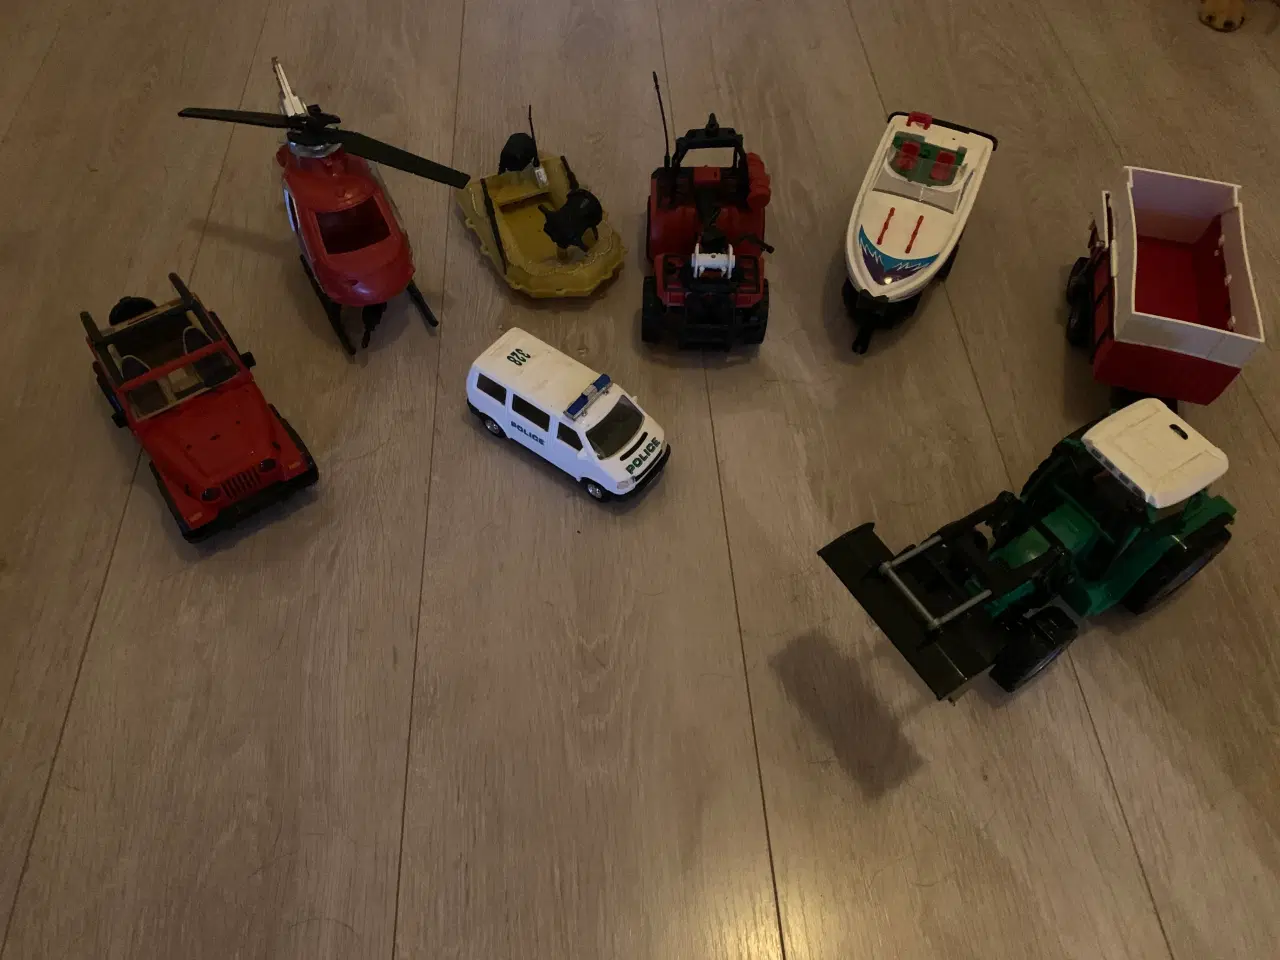 Billede 1 - Blandede legetøjsbiler